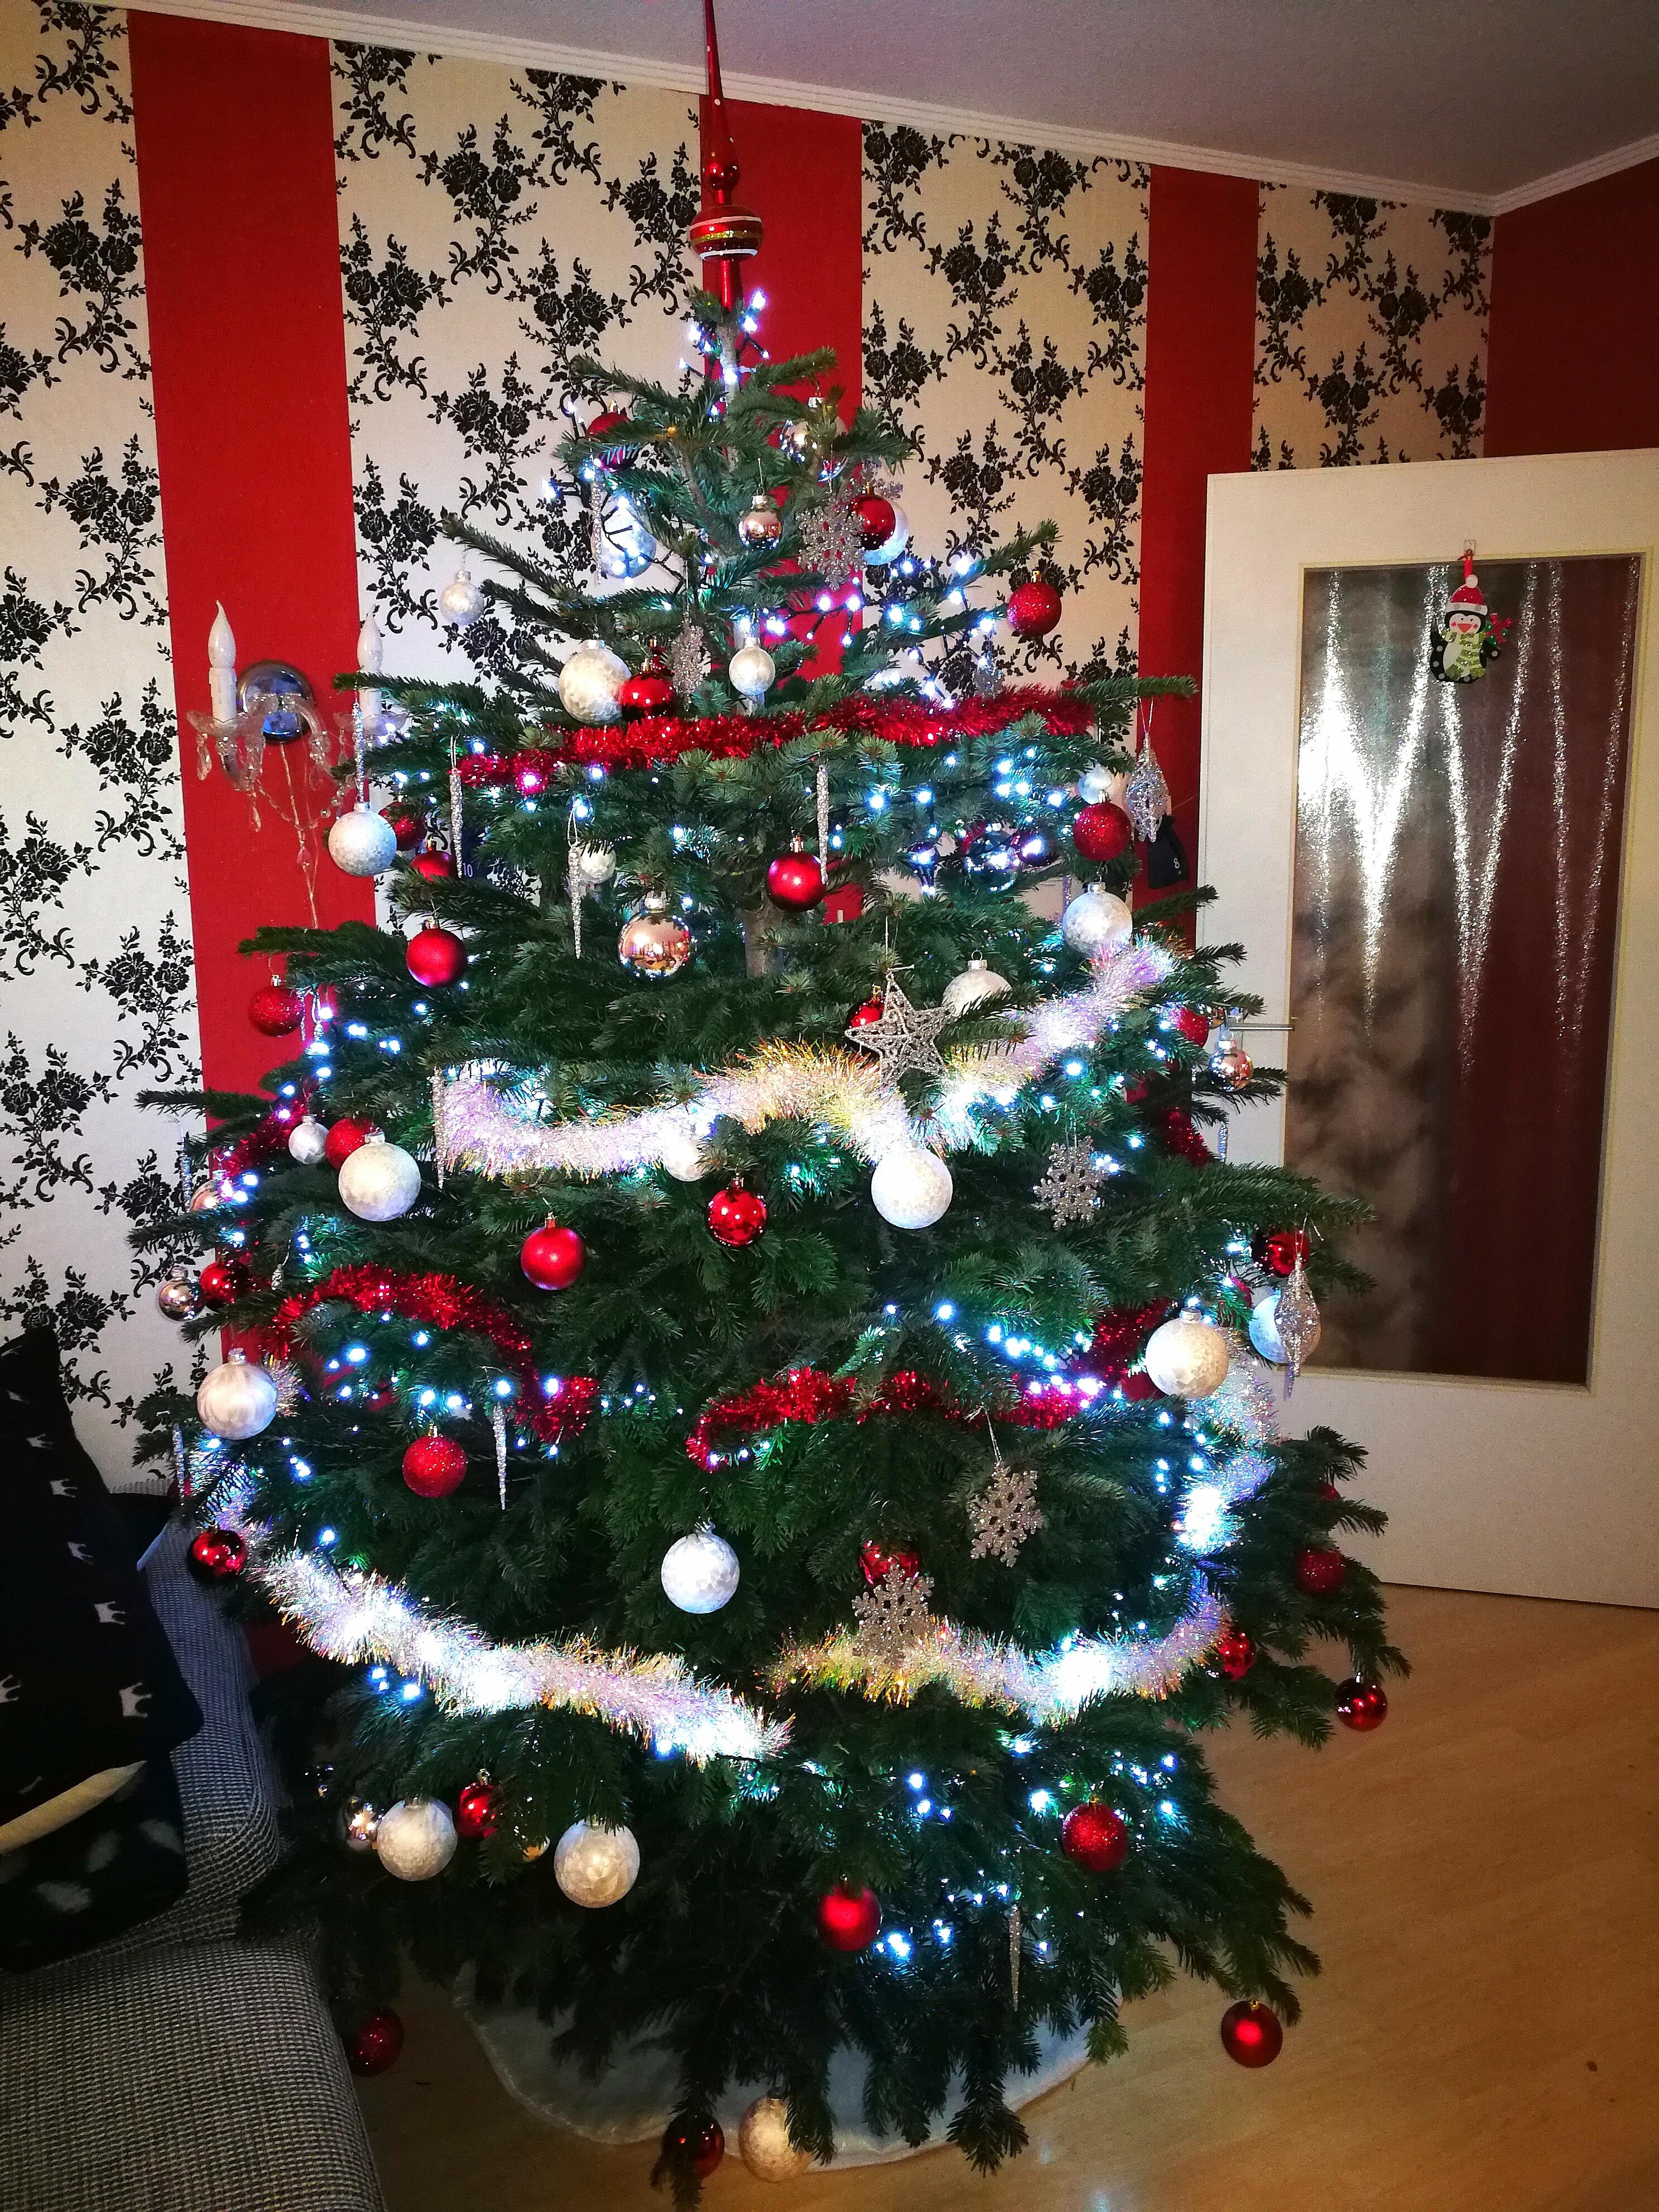 Da steht er nun...
#Weihnachtsbaum
#christmas 
#WEIHNACHTEN 